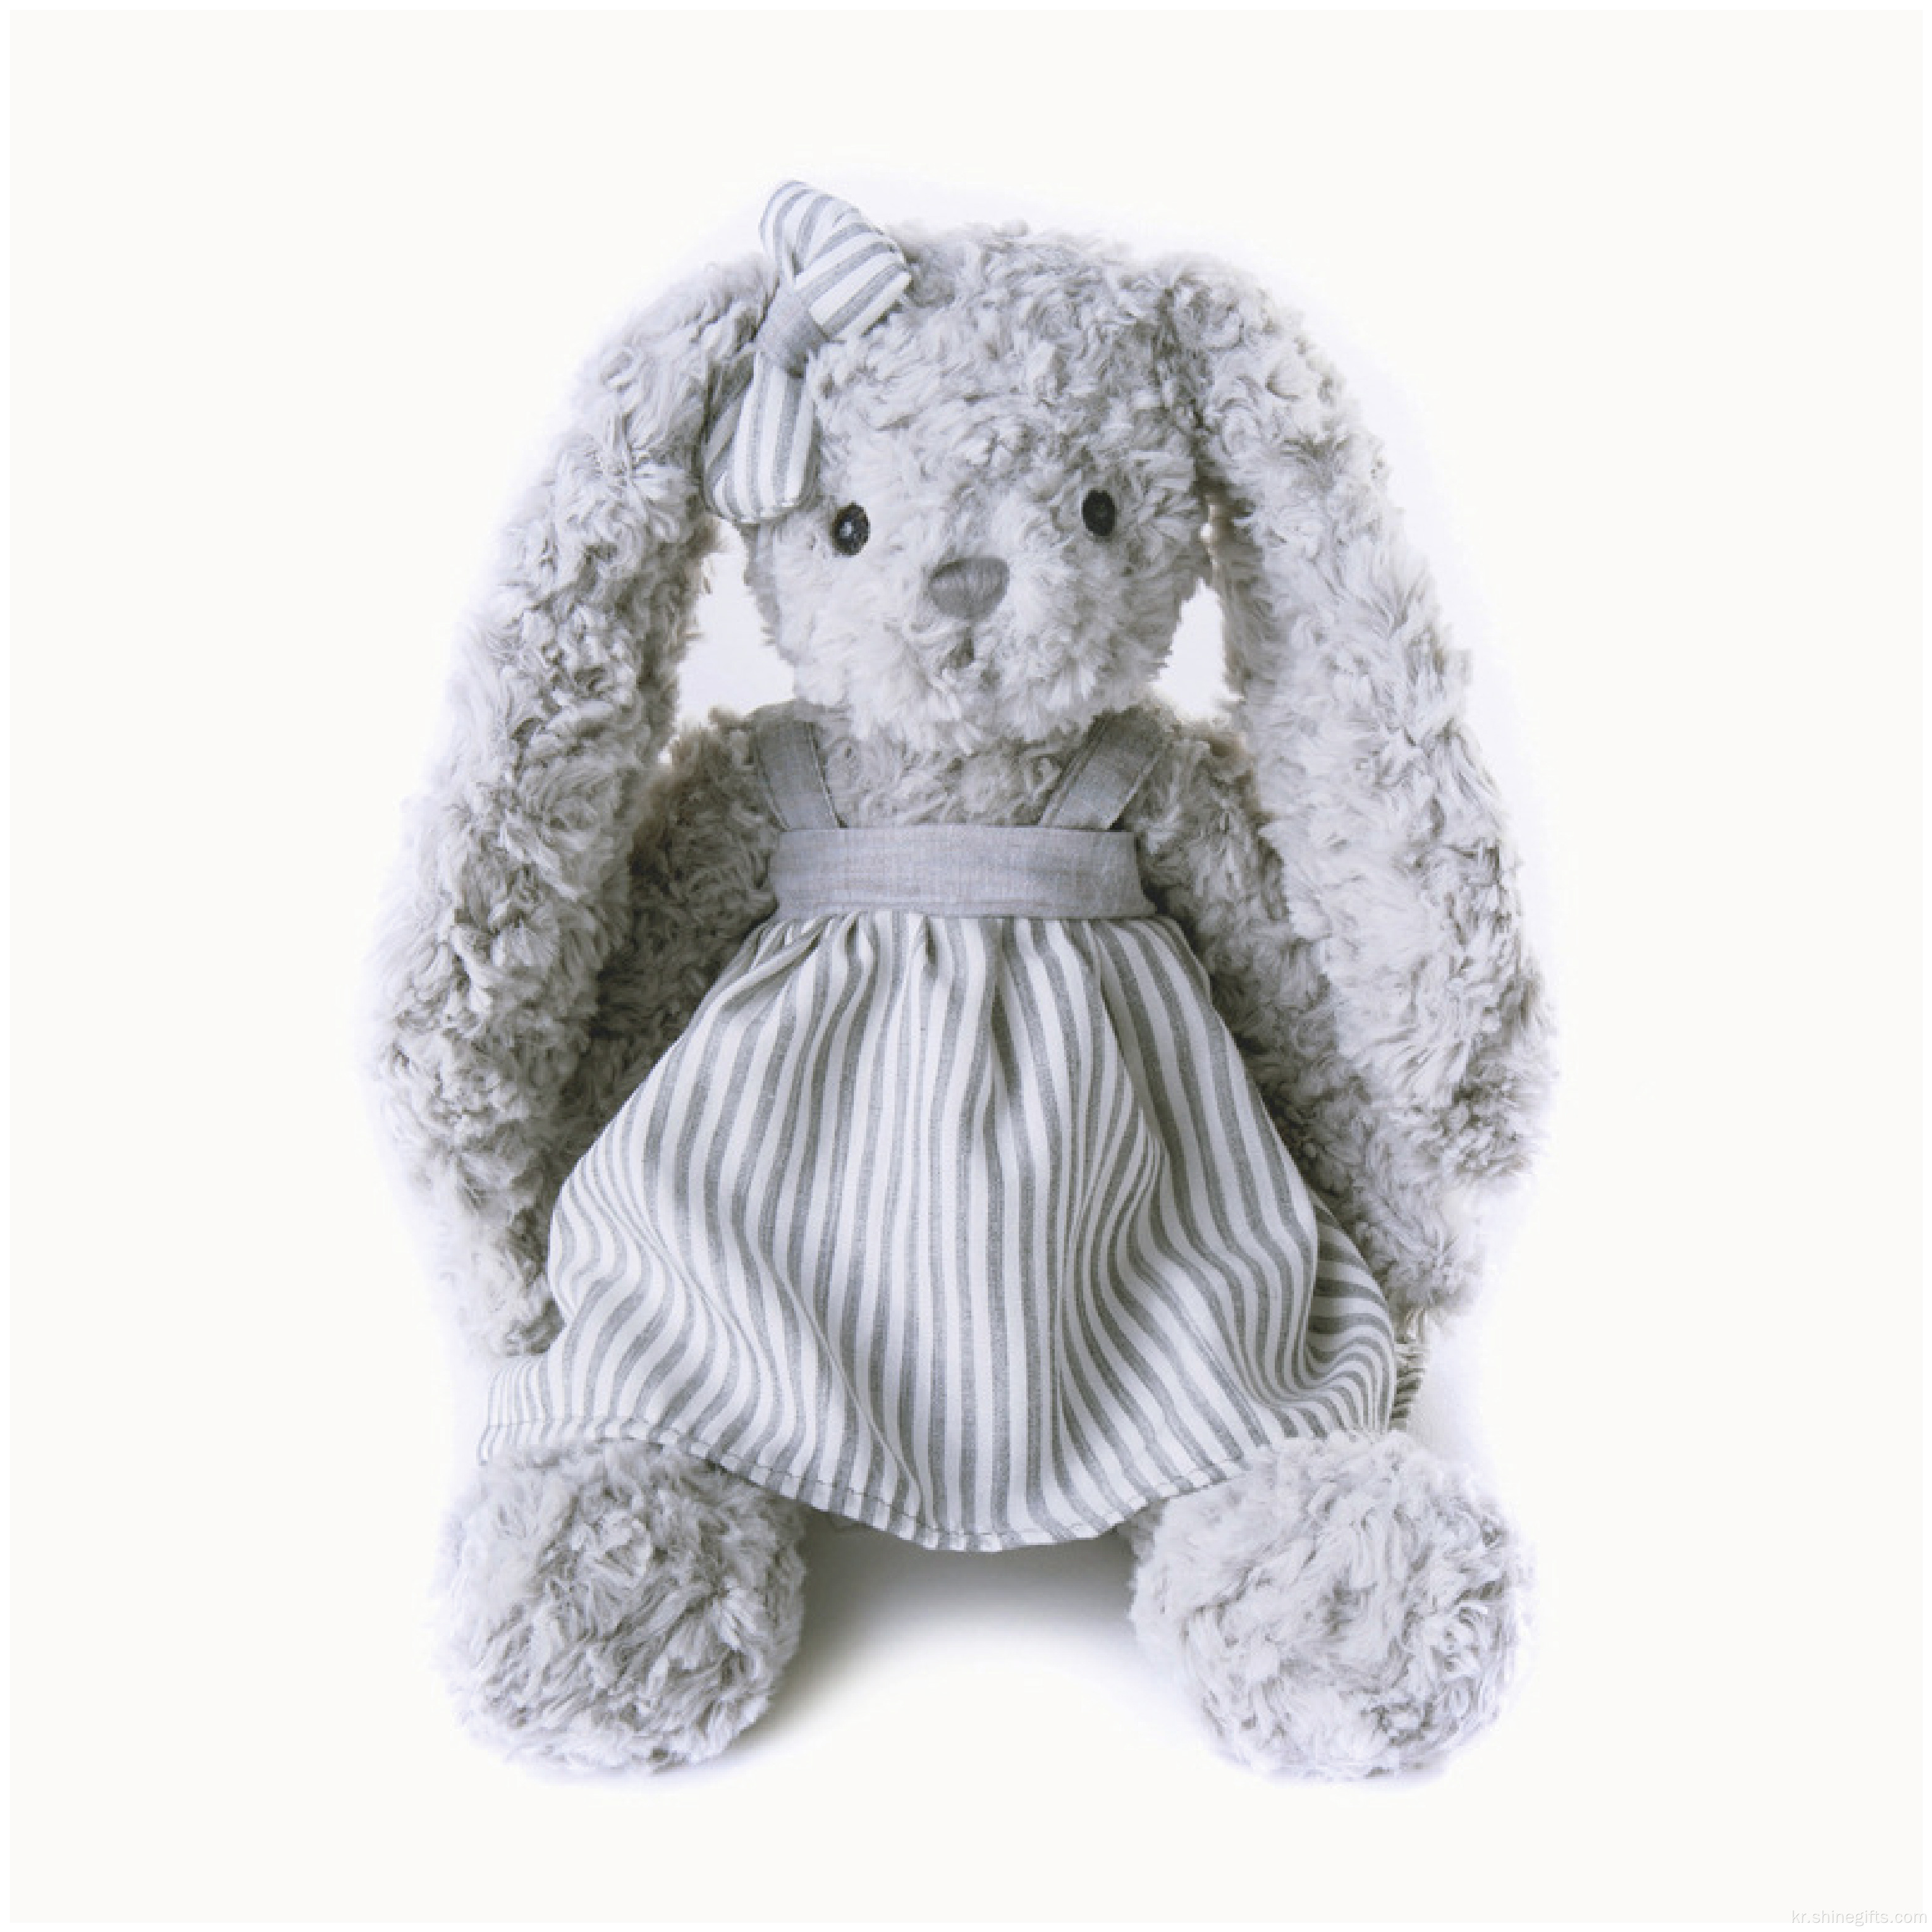 귀여운 토끼 인형 아기 소프트 플러시 장난감